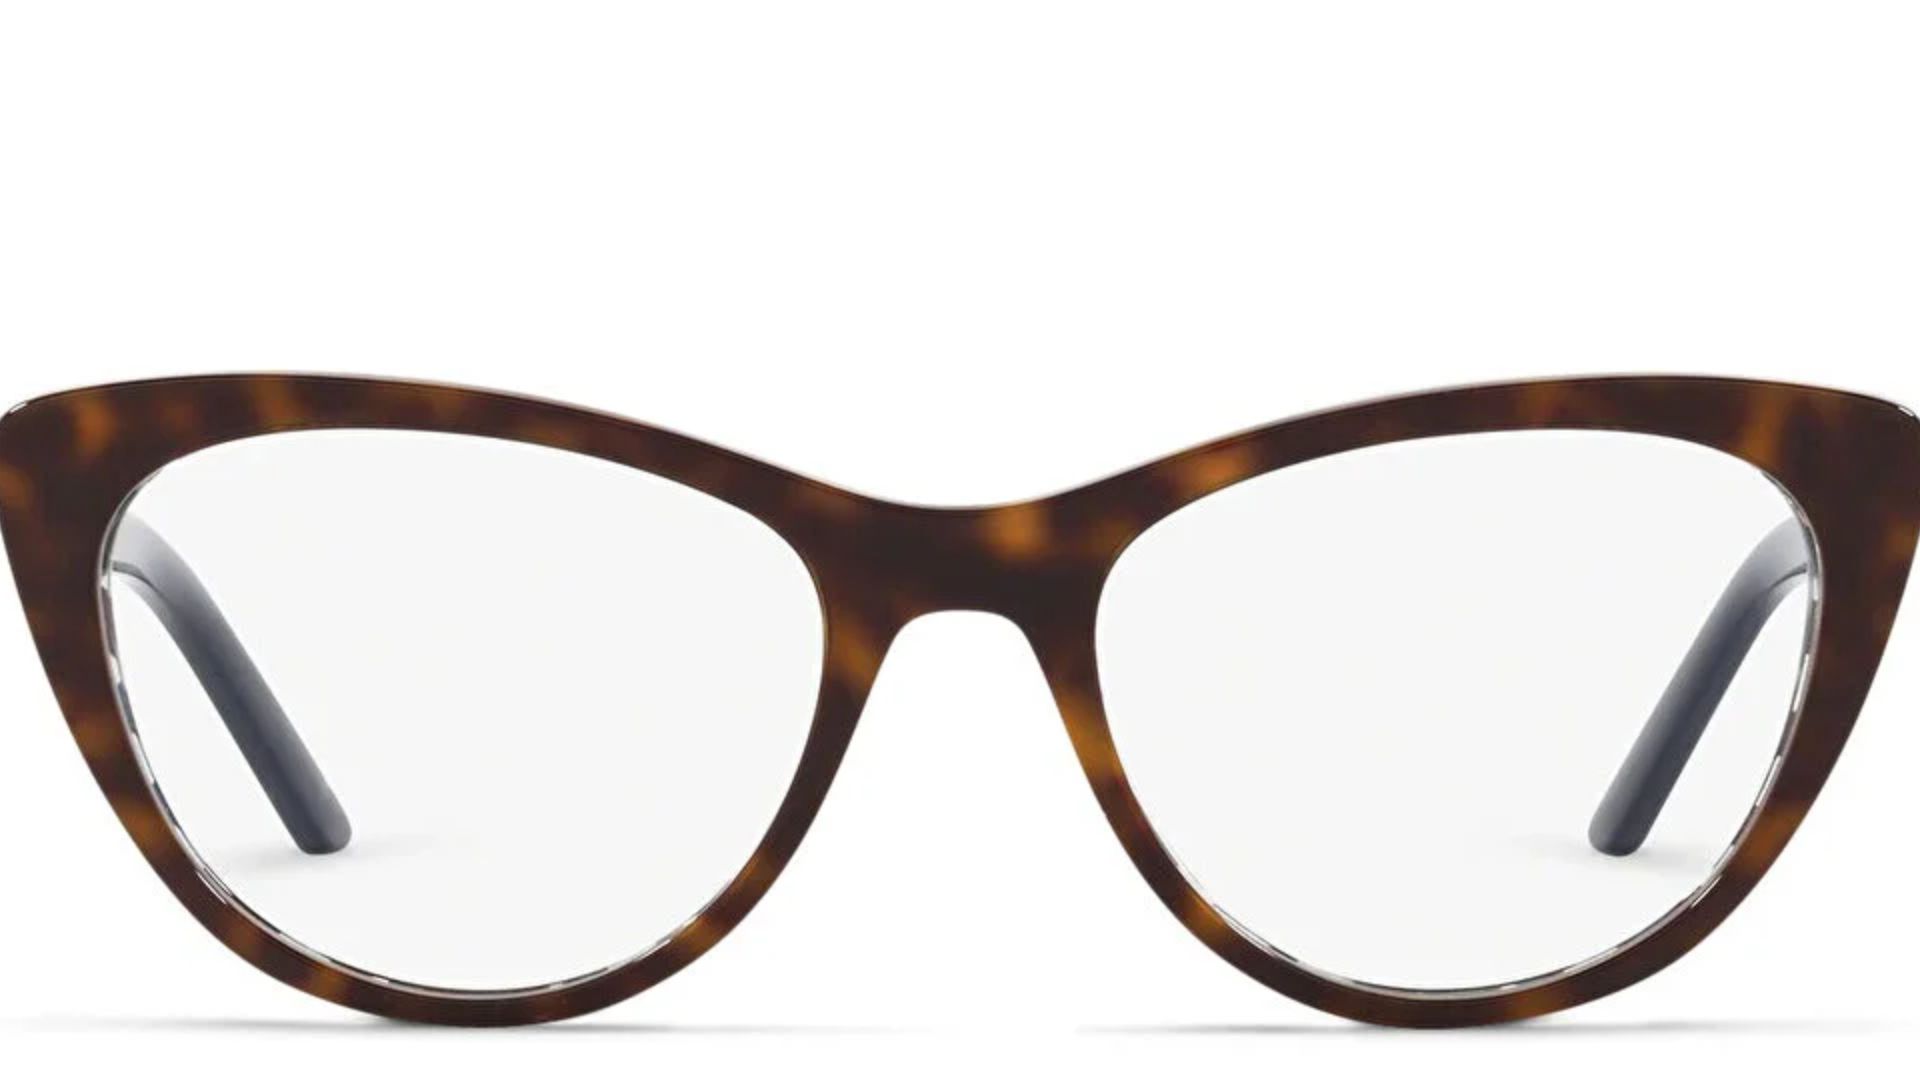 cateye eyeglasses